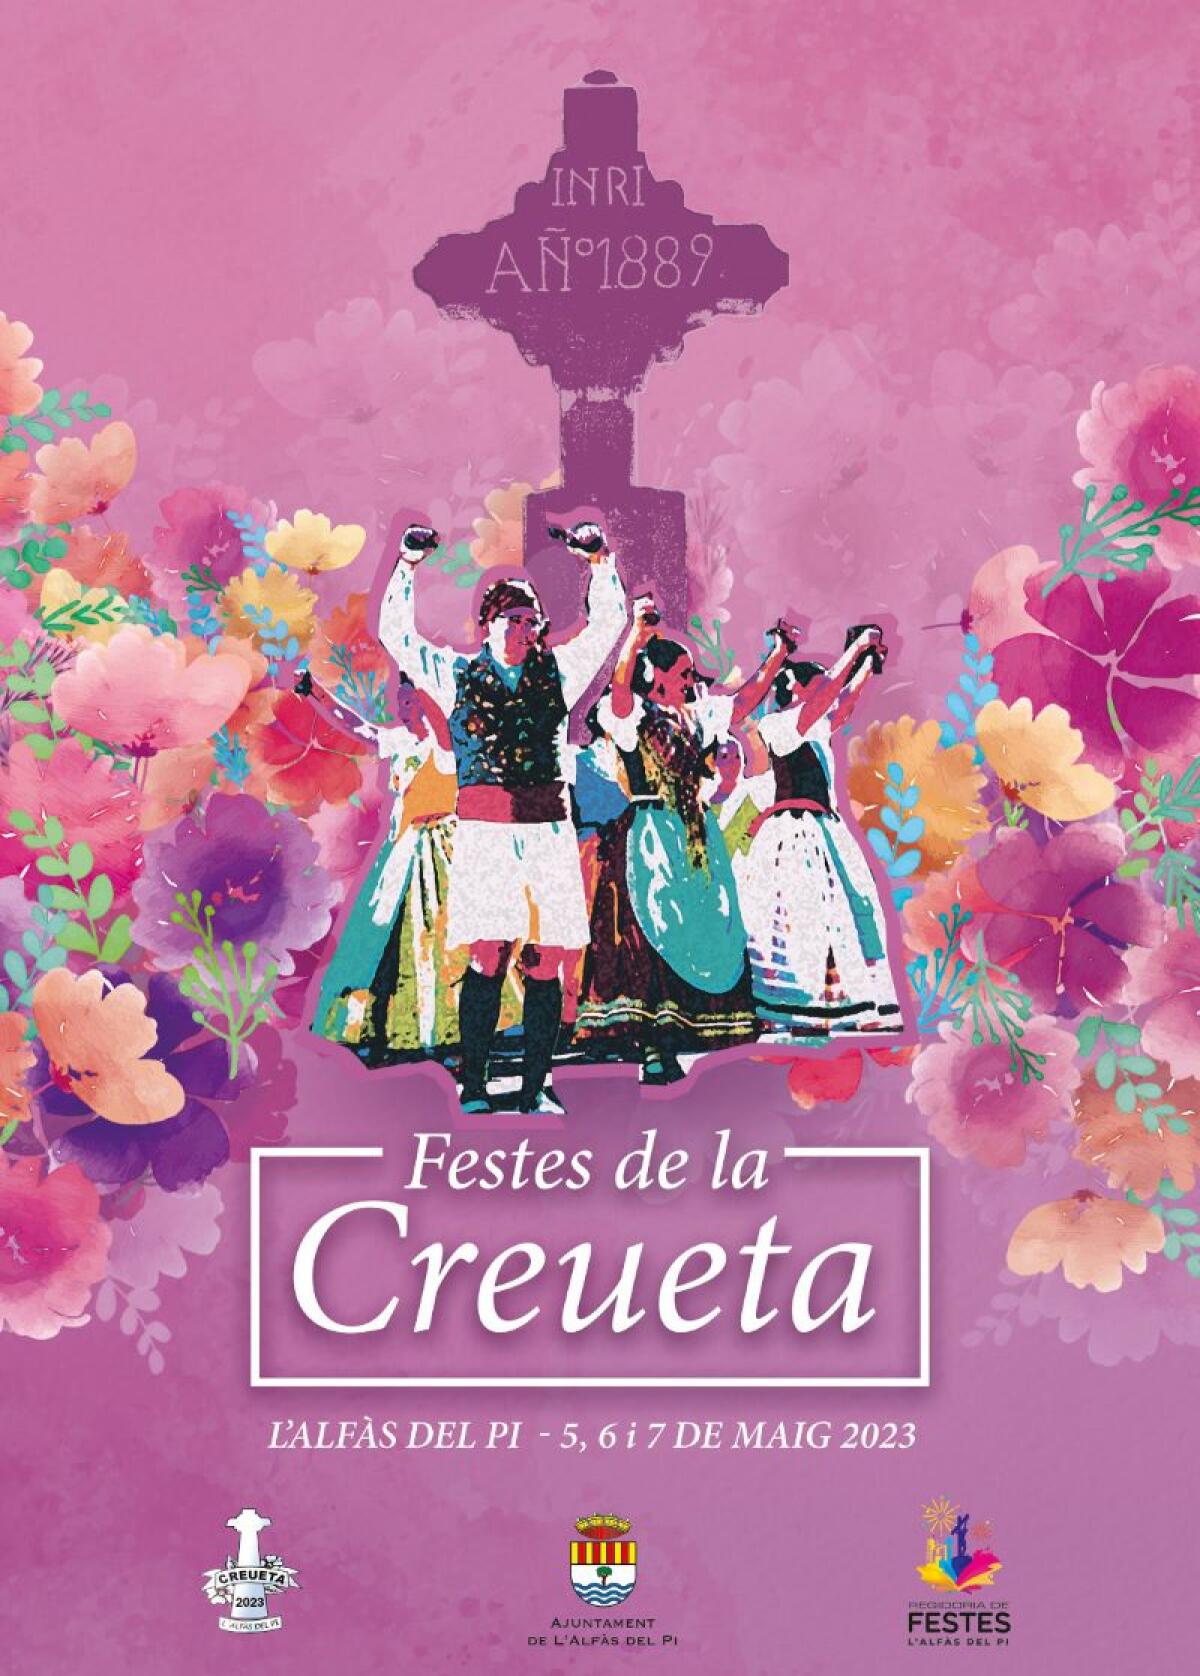 Mañana se inician en l’Alfàs las tradicionales fiestas de La Creueta